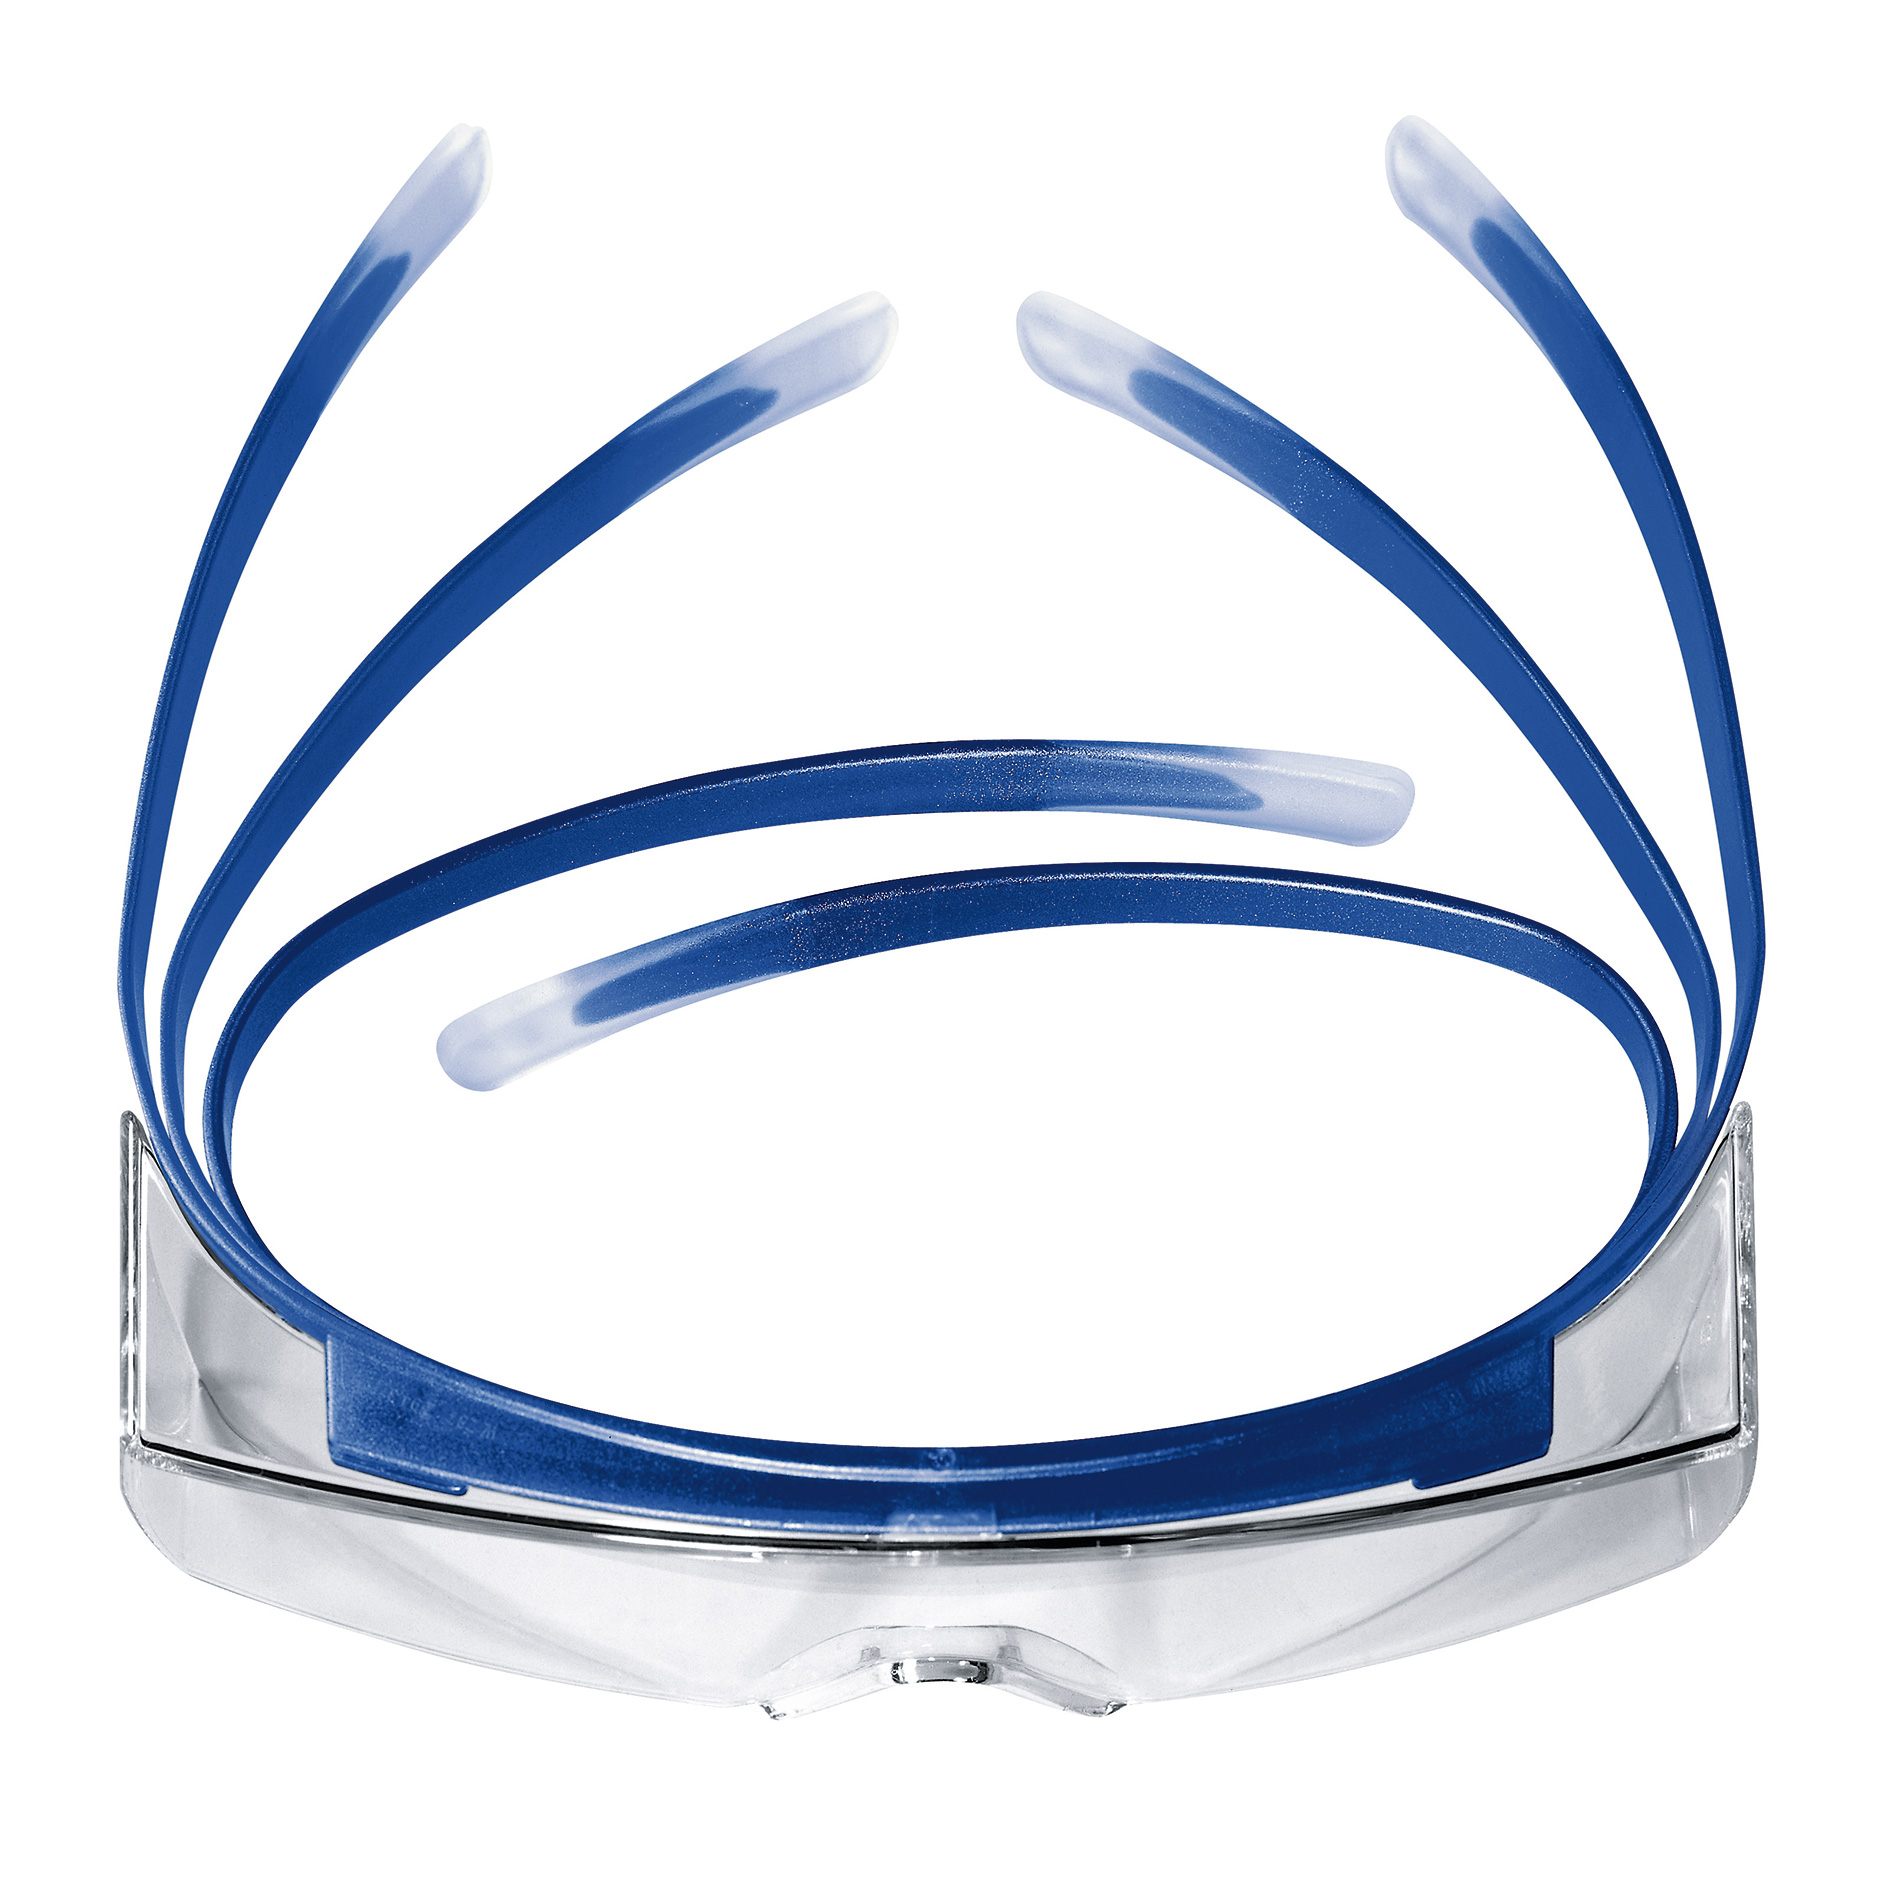 Kính bảo hộ Uvex Super OTG kính chống bụi có thể đeo cùng kính cận, chống hơi nước, ngăn chặn tia UV màu trắng, mã 9169065